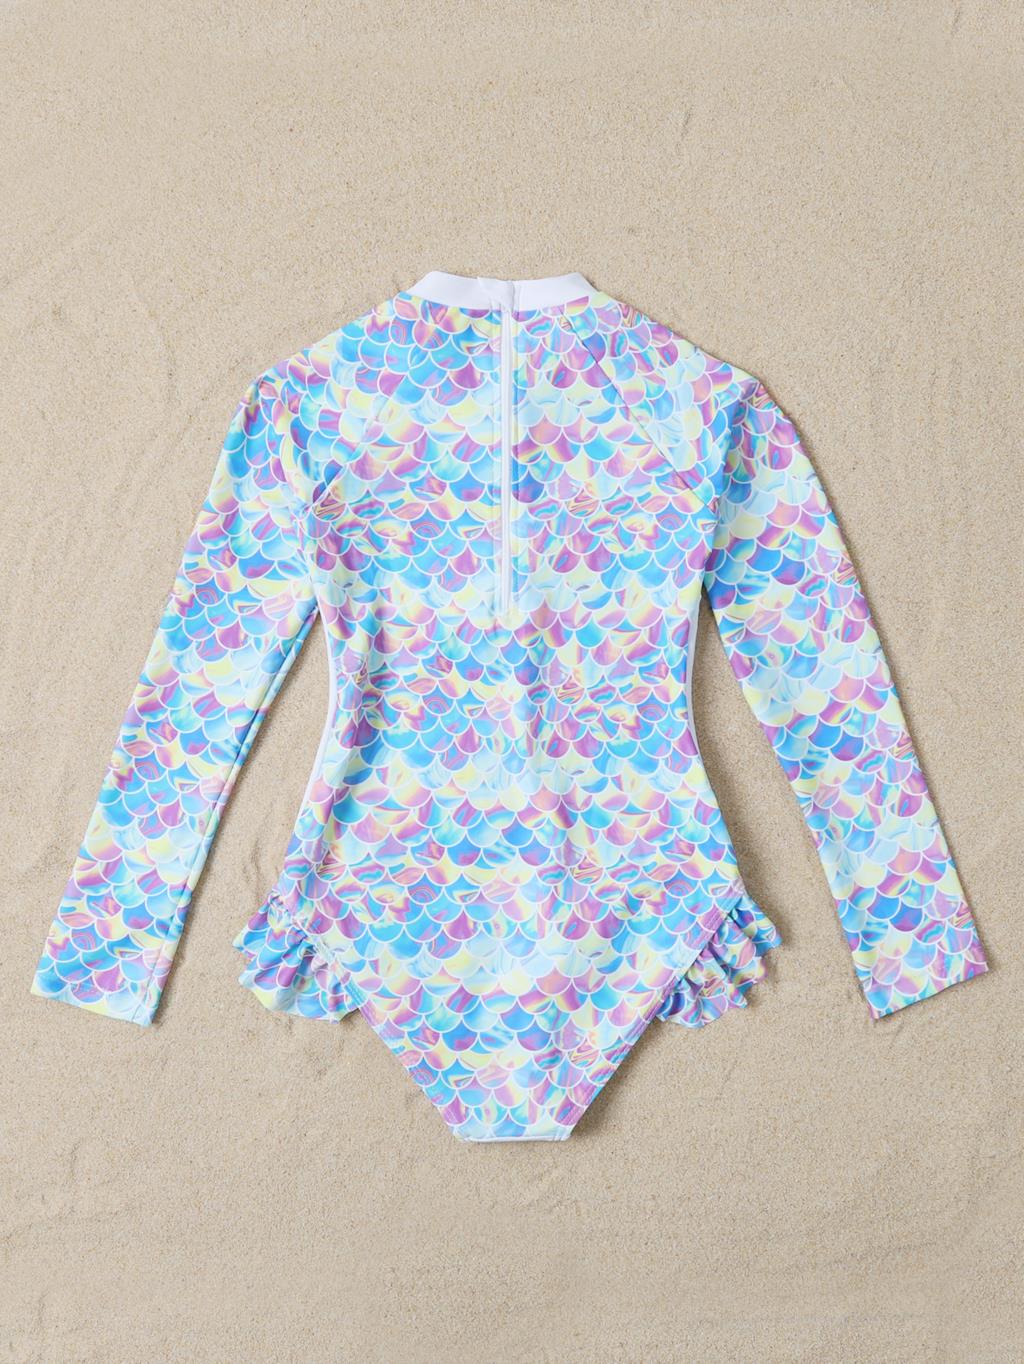 Children&#39;s One-piece Surf Wear Swimsuit Baby Swimwear Children&#39;s One-piece Cute Swimsuit Girls Swimsuit